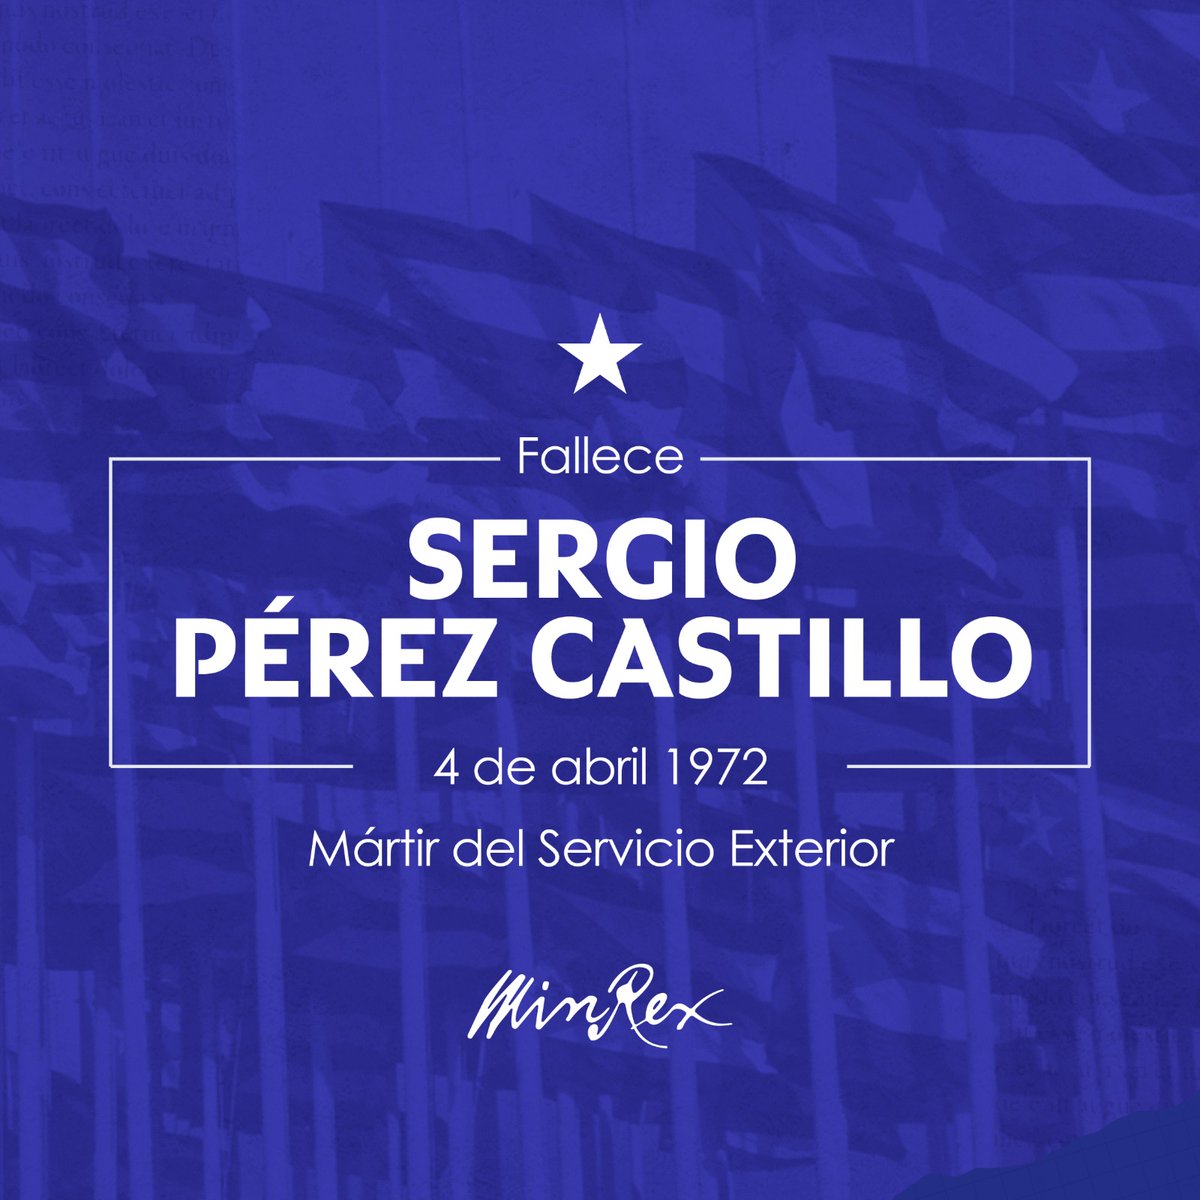 Recordamos a Sergio Pérez Castillo, quien hace 52 años fue víctima de atentado terrorista vs Oficina Comercial de #Cuba en Montreal, Canadá. Acciones de odio como estas y legado de nuestros mártires del servicio exterior refuerzan determinación de la #DiplomaciaRevolucionaria.